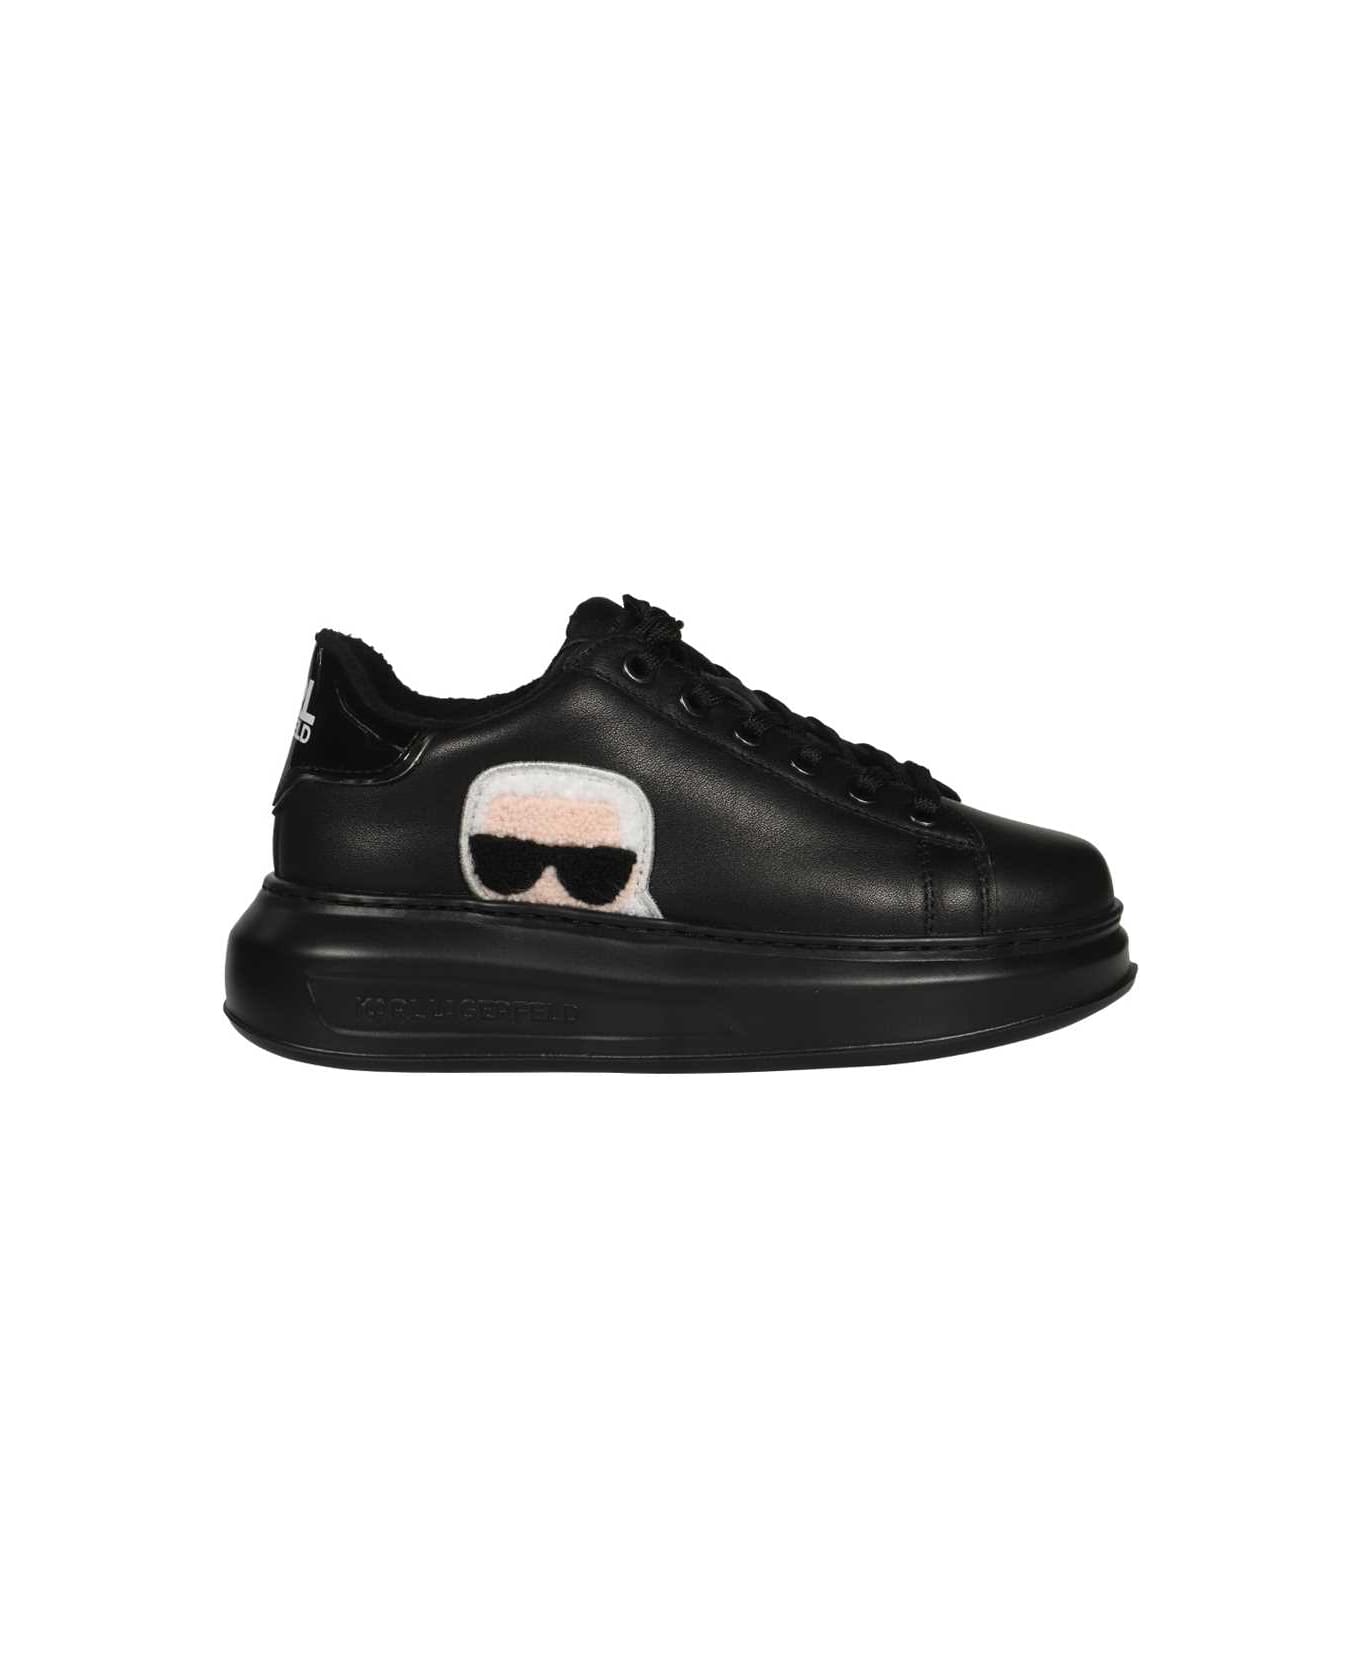 Karl Lagerfeld Low-top Sneakers - black ウェッジシューズ